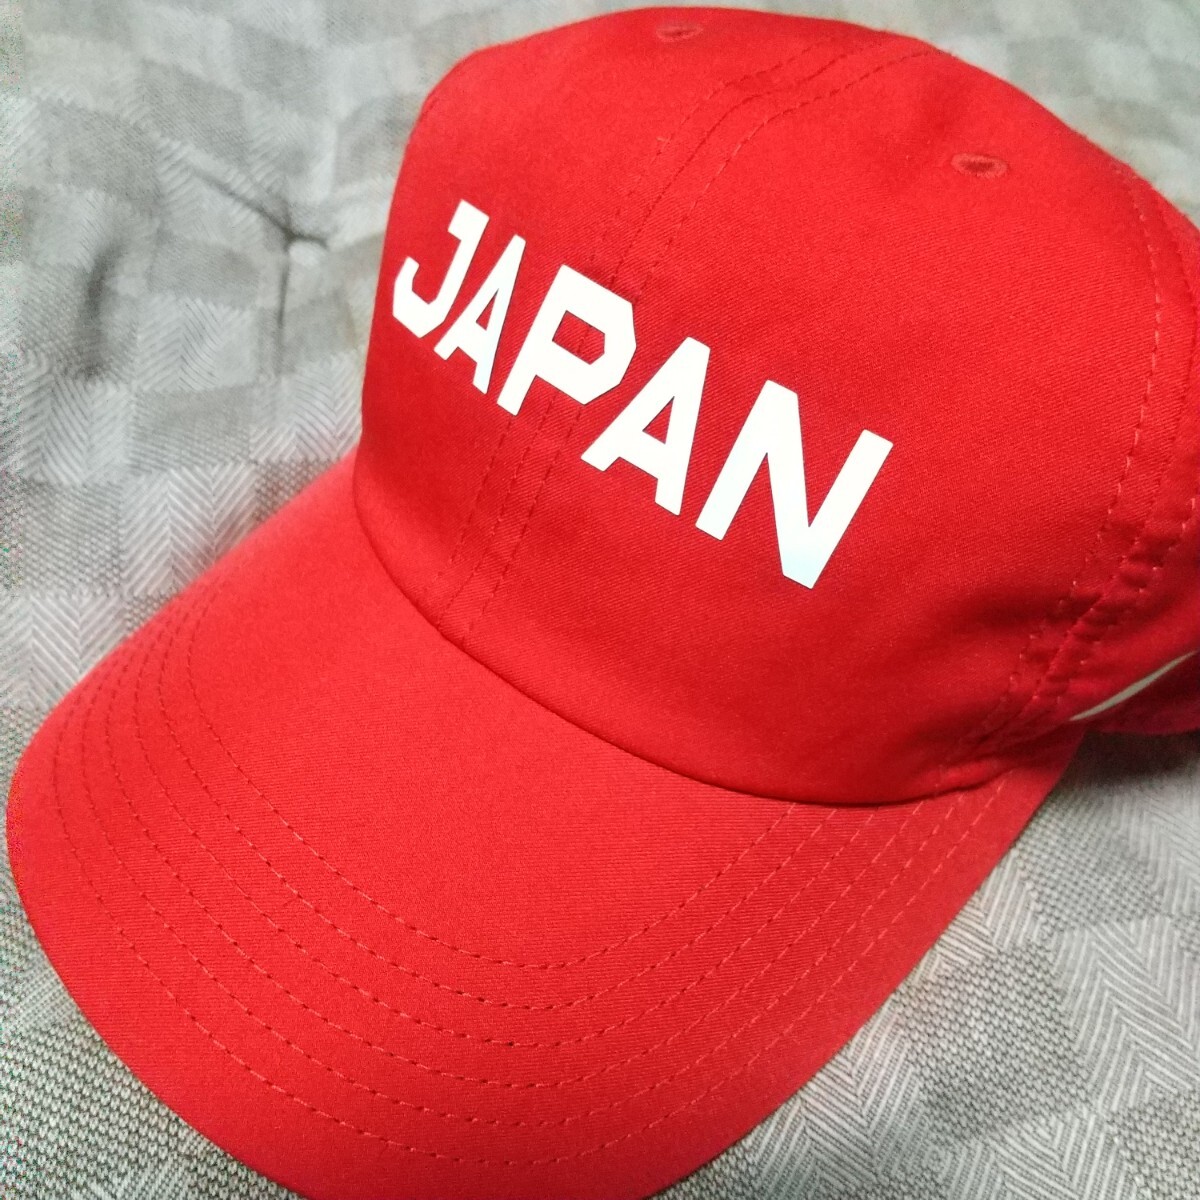 ナイキKIDSキャップ 赤 JAPAN 子供ぼうし NIKE 帽子_画像1